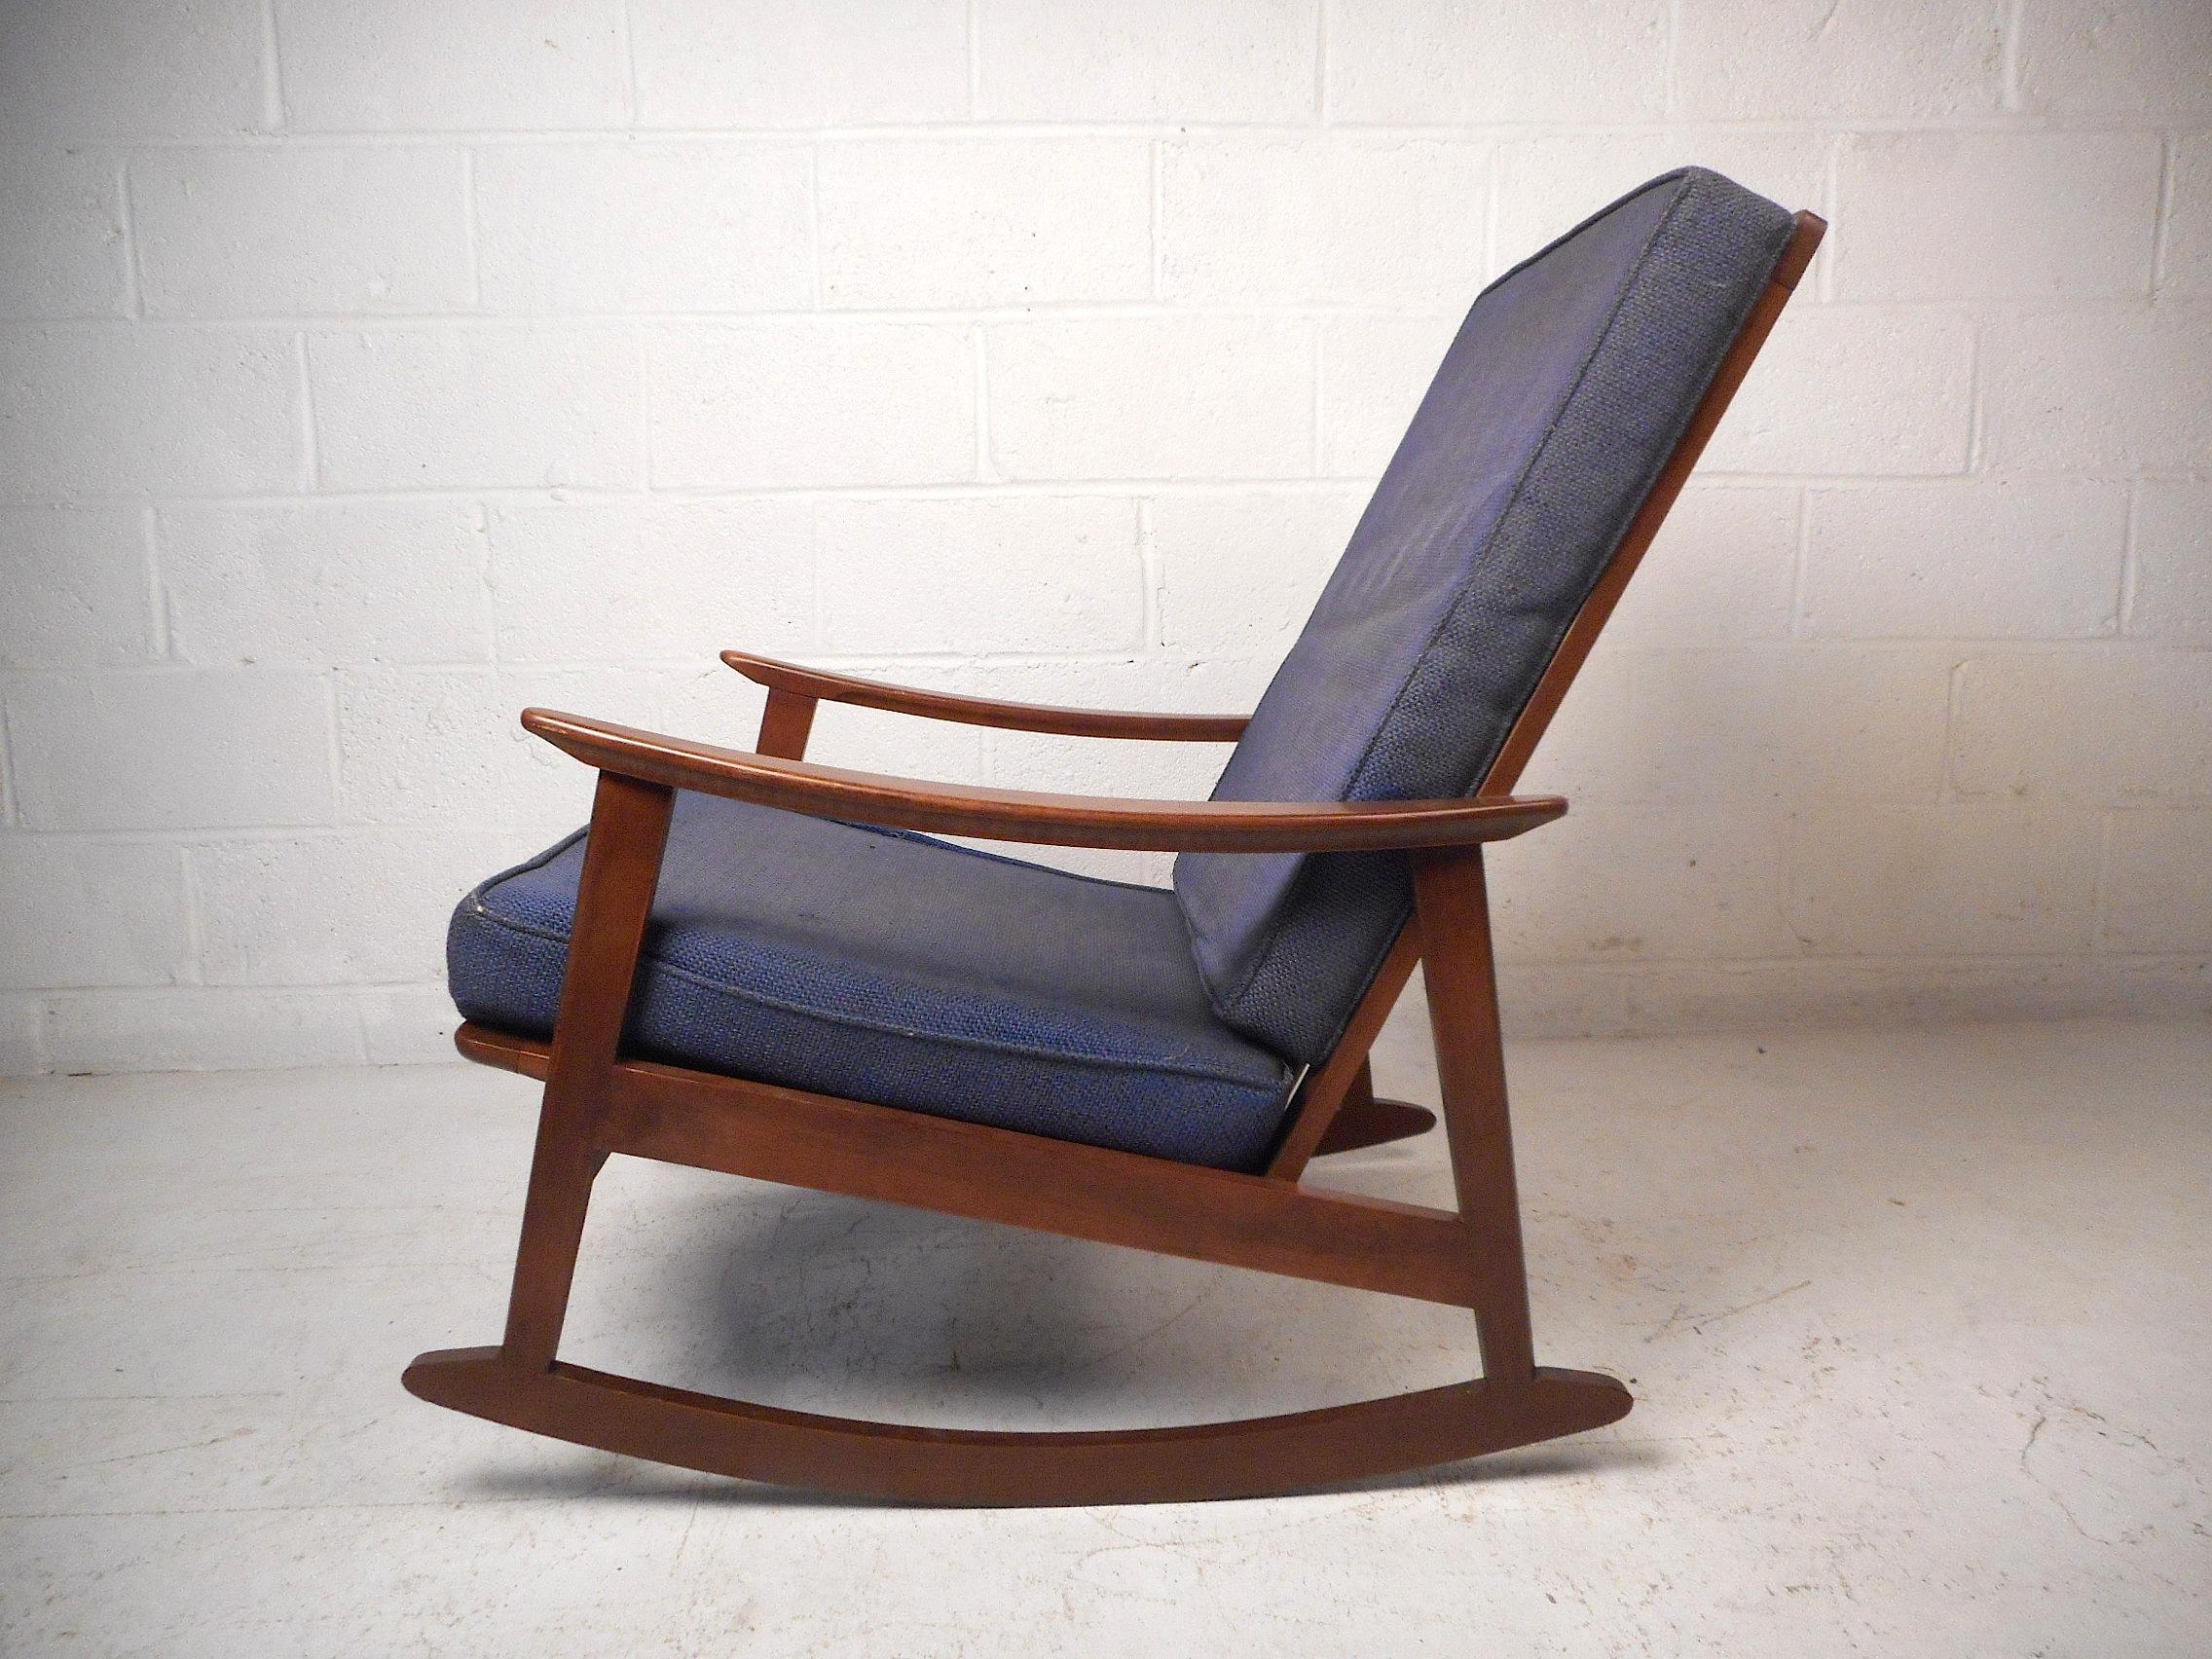 Dieser beeindruckende moderne Schaukelstuhl im Vintage-Stil zeichnet sich durch eine robuste Konstruktion aus Nussbaumholz, geschmeidig geformte Armlehnen und eine hohe Rückenlehne aus, die sowohl Komfort als auch Stil gewährleisten. Eine großartige